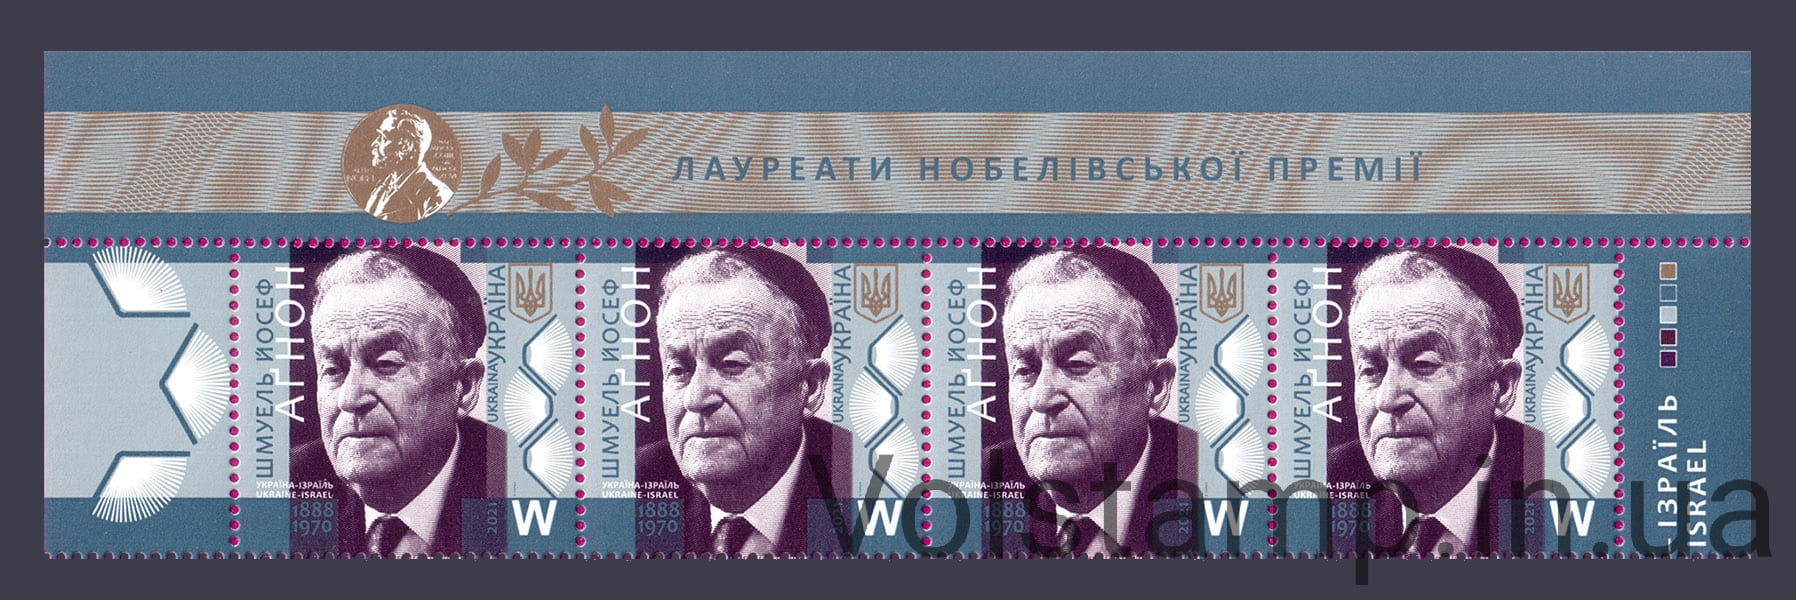 2021 Верх листа Шмуэль Йосеф Агнон писатель Нобелевский лауреат №1938